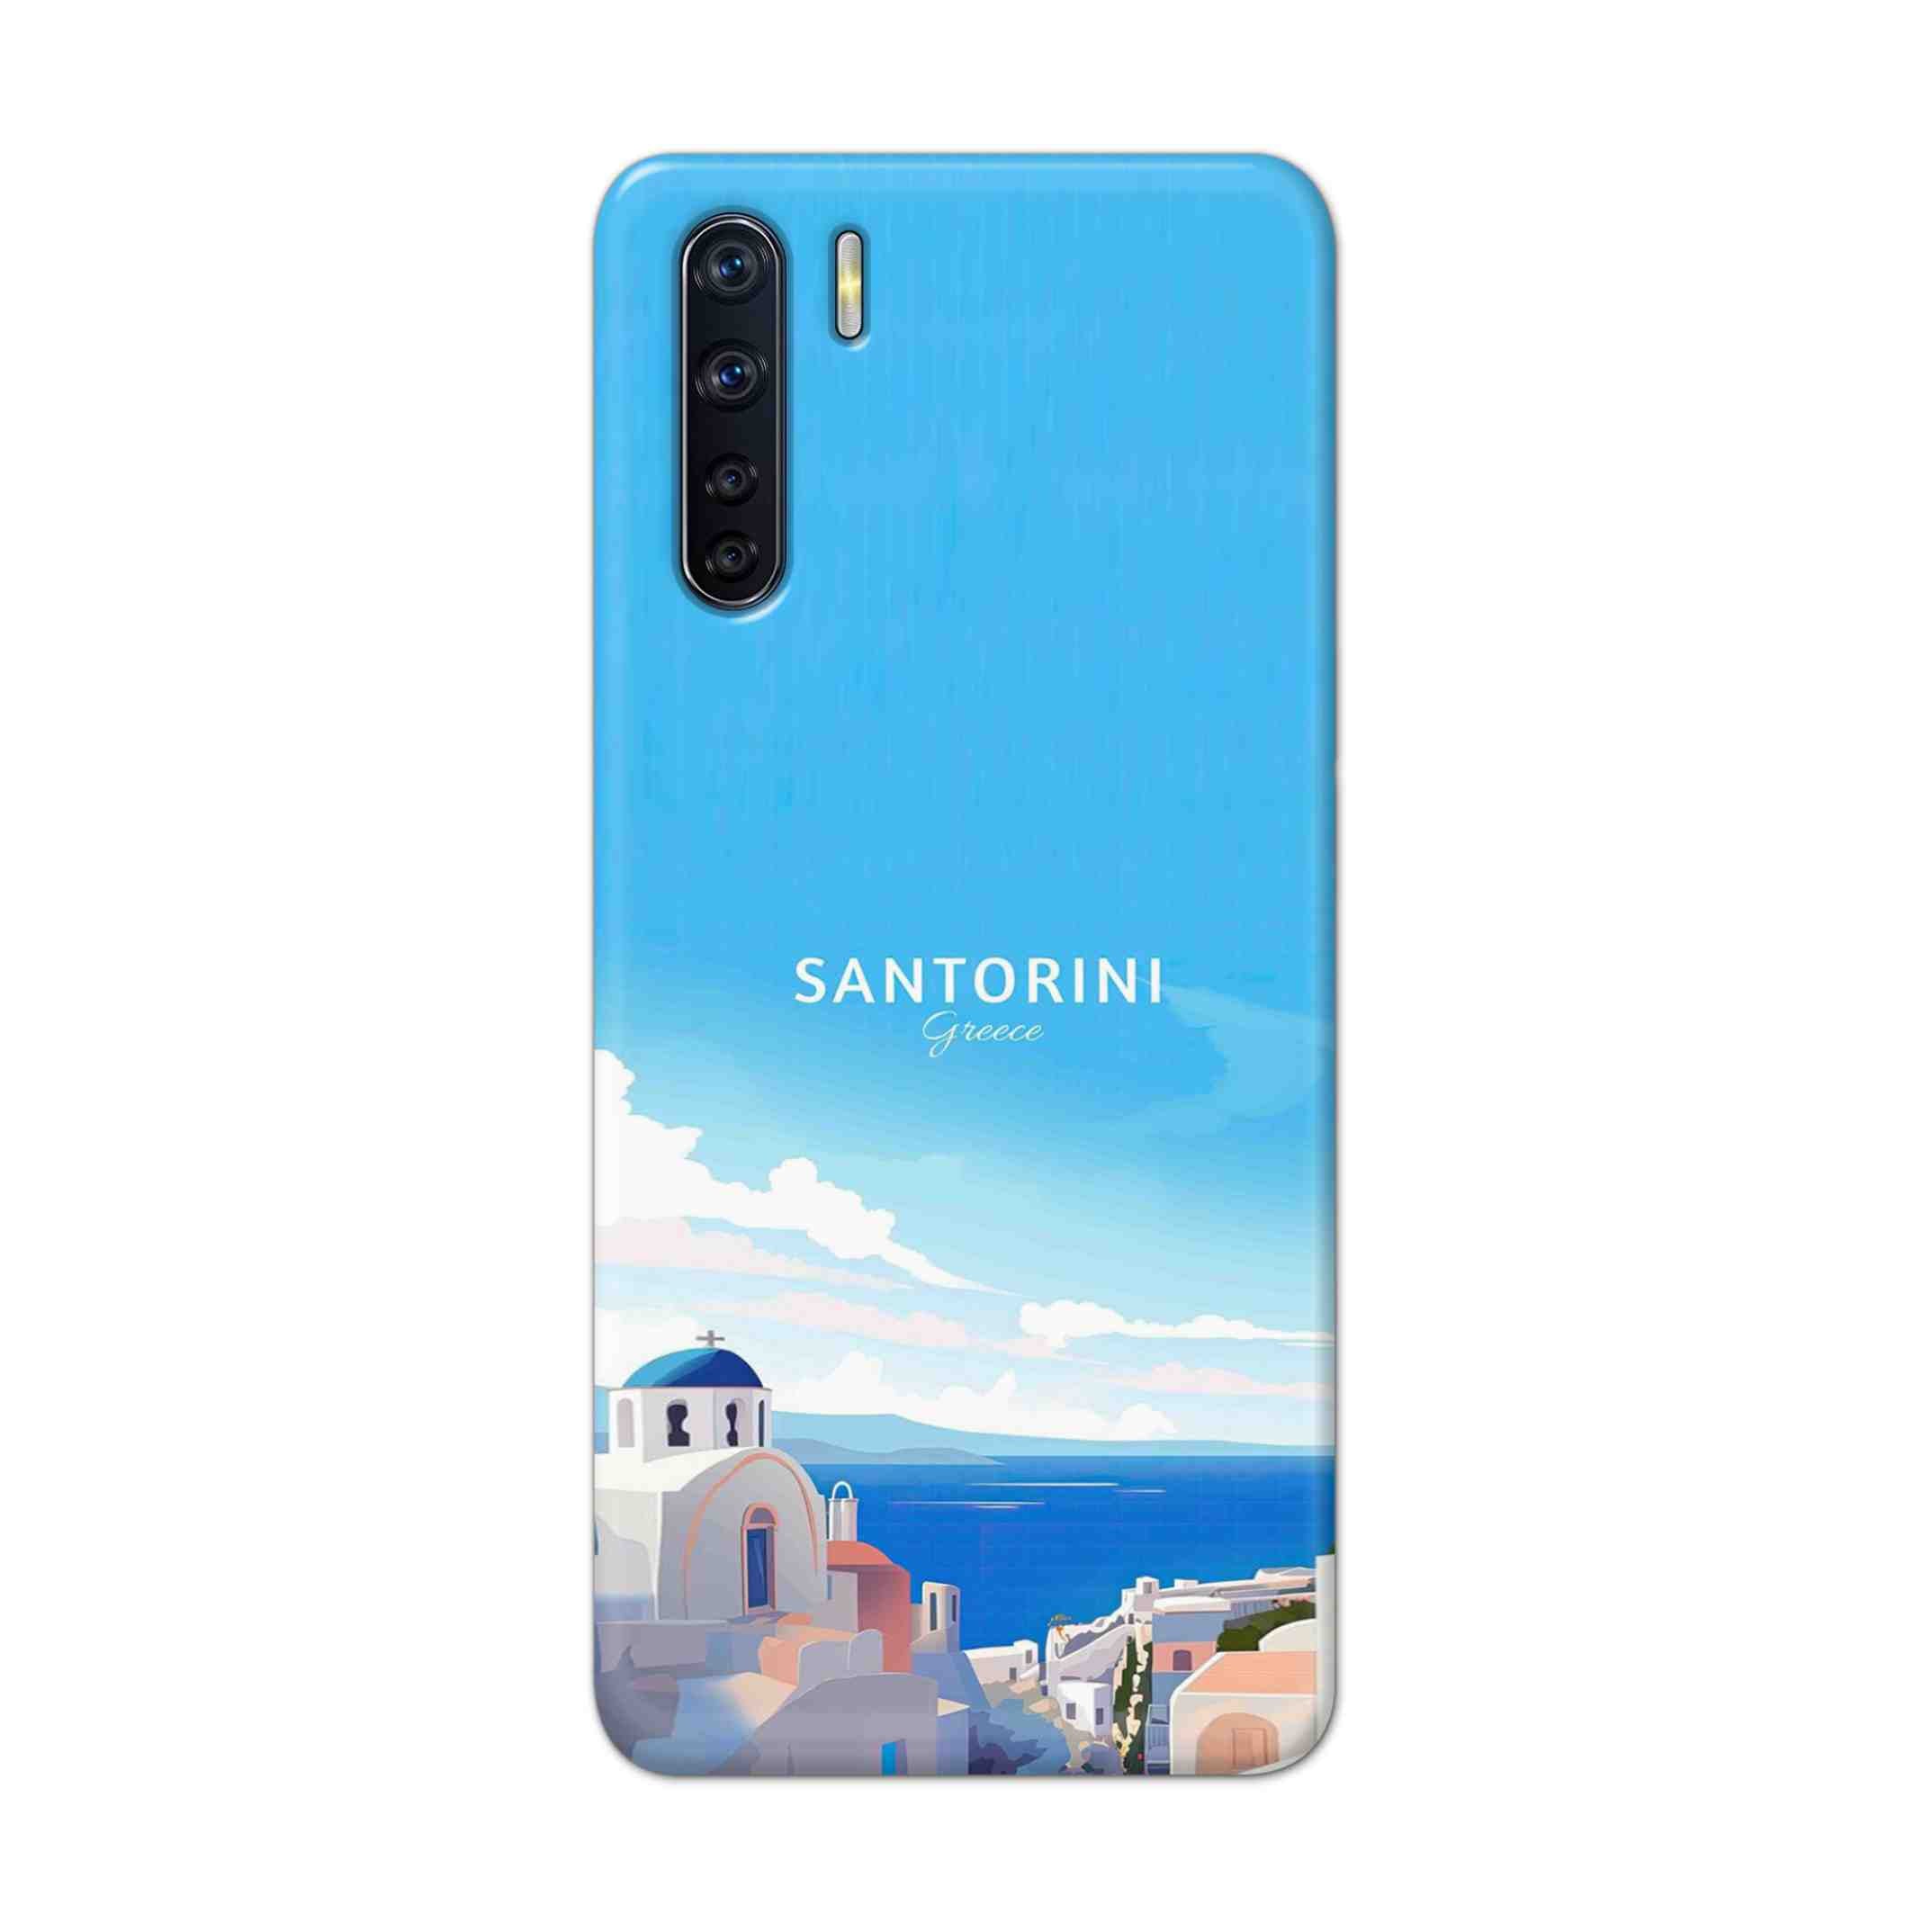 Buy Santorini Hard Back Mobile Phone Case Cover For OPPO F15 Online